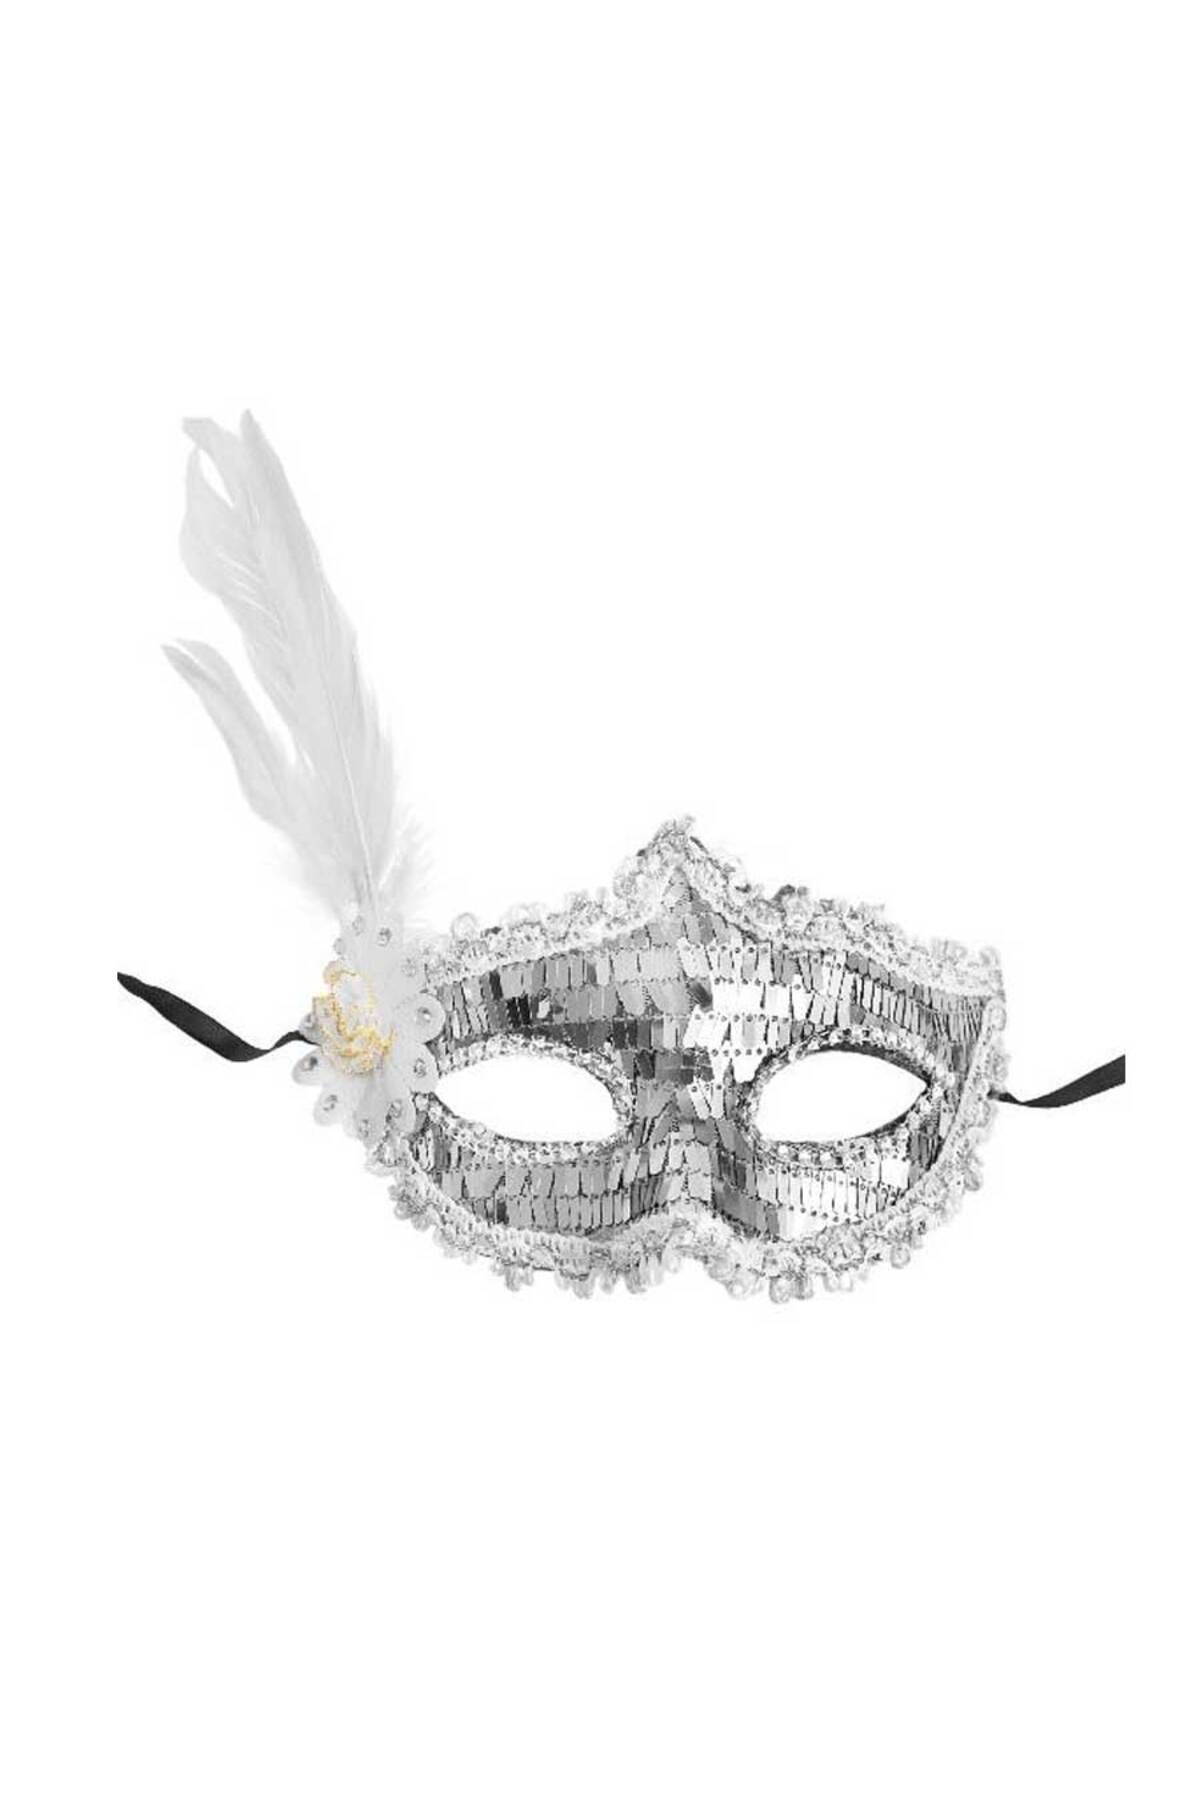 acakir Gümüş Payetli Pullu Beyaz Renk Yandan Tüylü Parti Maskesi 18x22 Cm